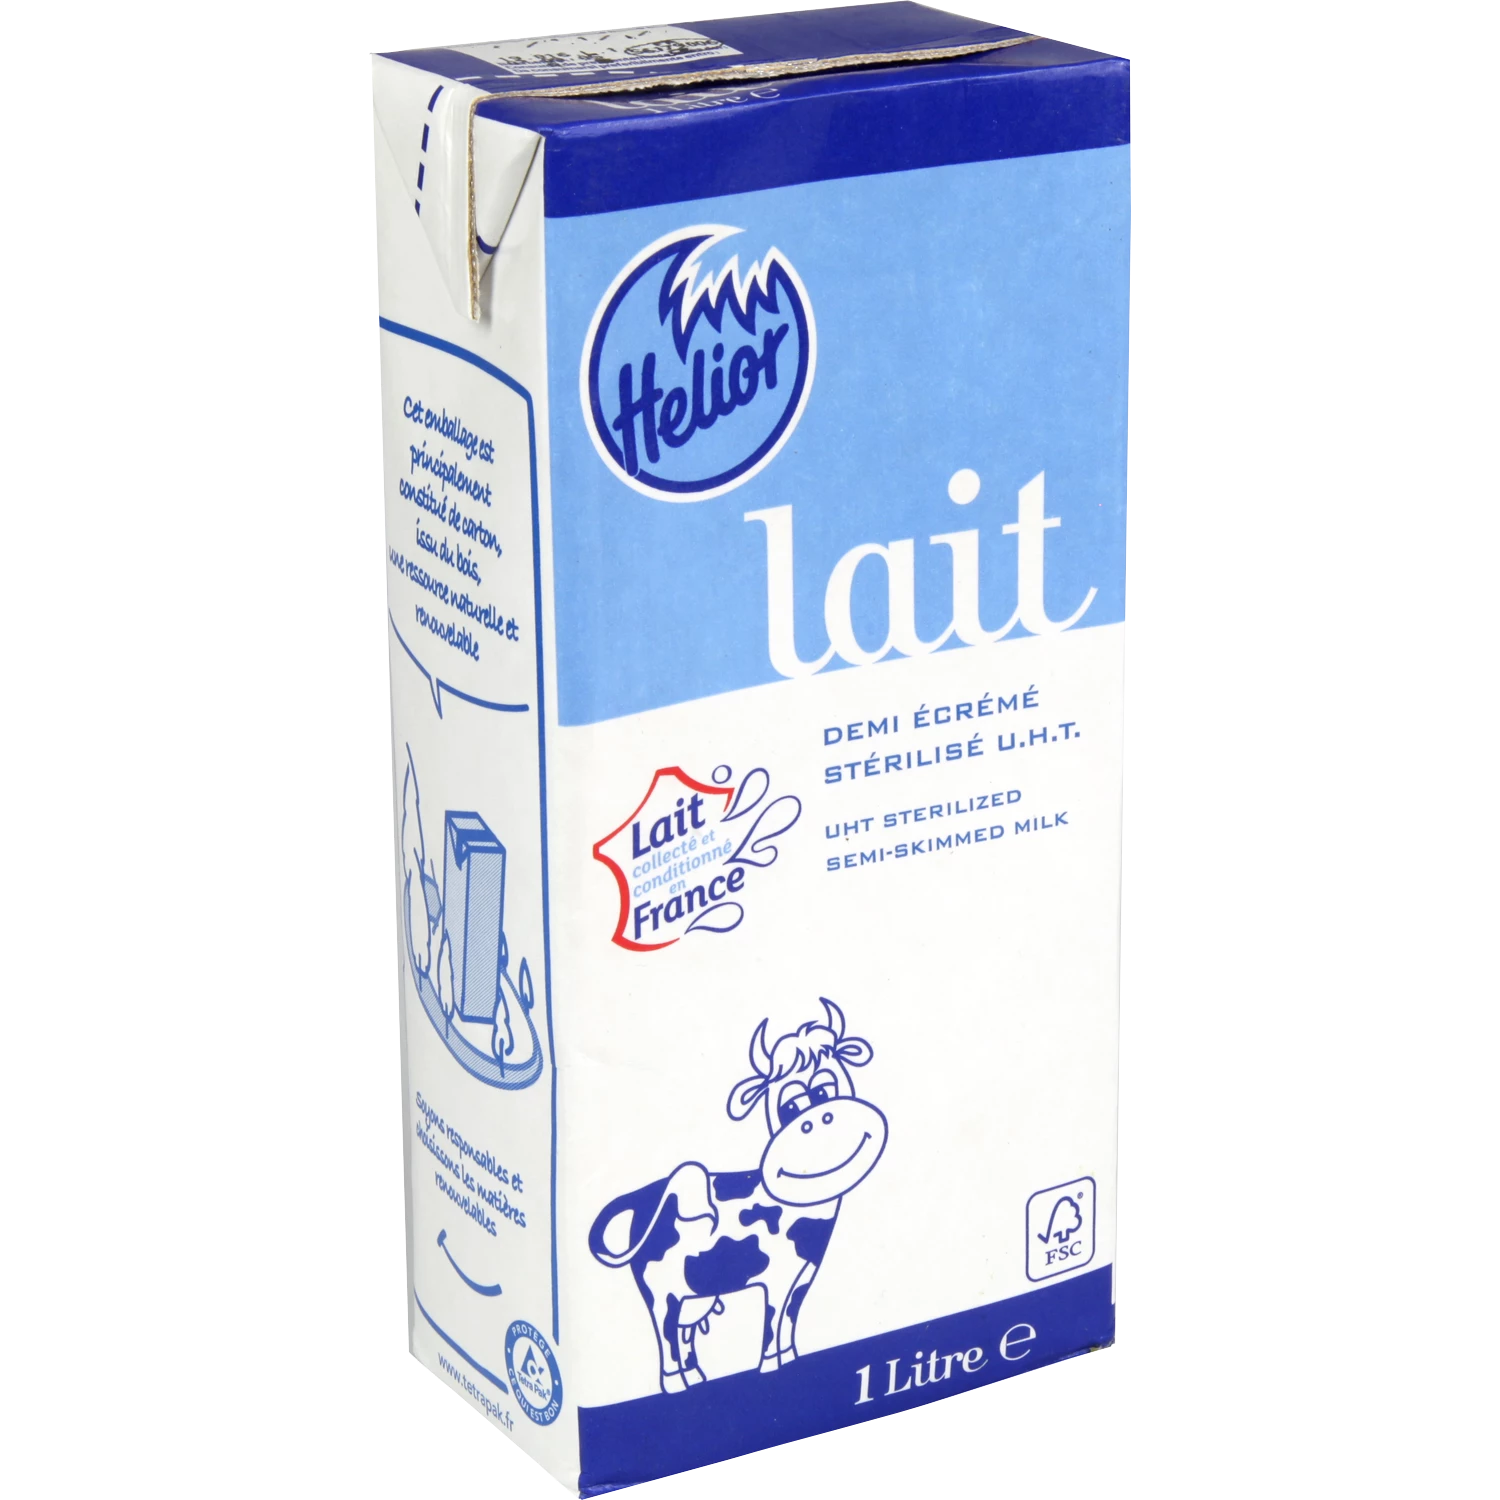 UHT Sterilized Semi-Skimmed Milk, 6x1l - HELIOR